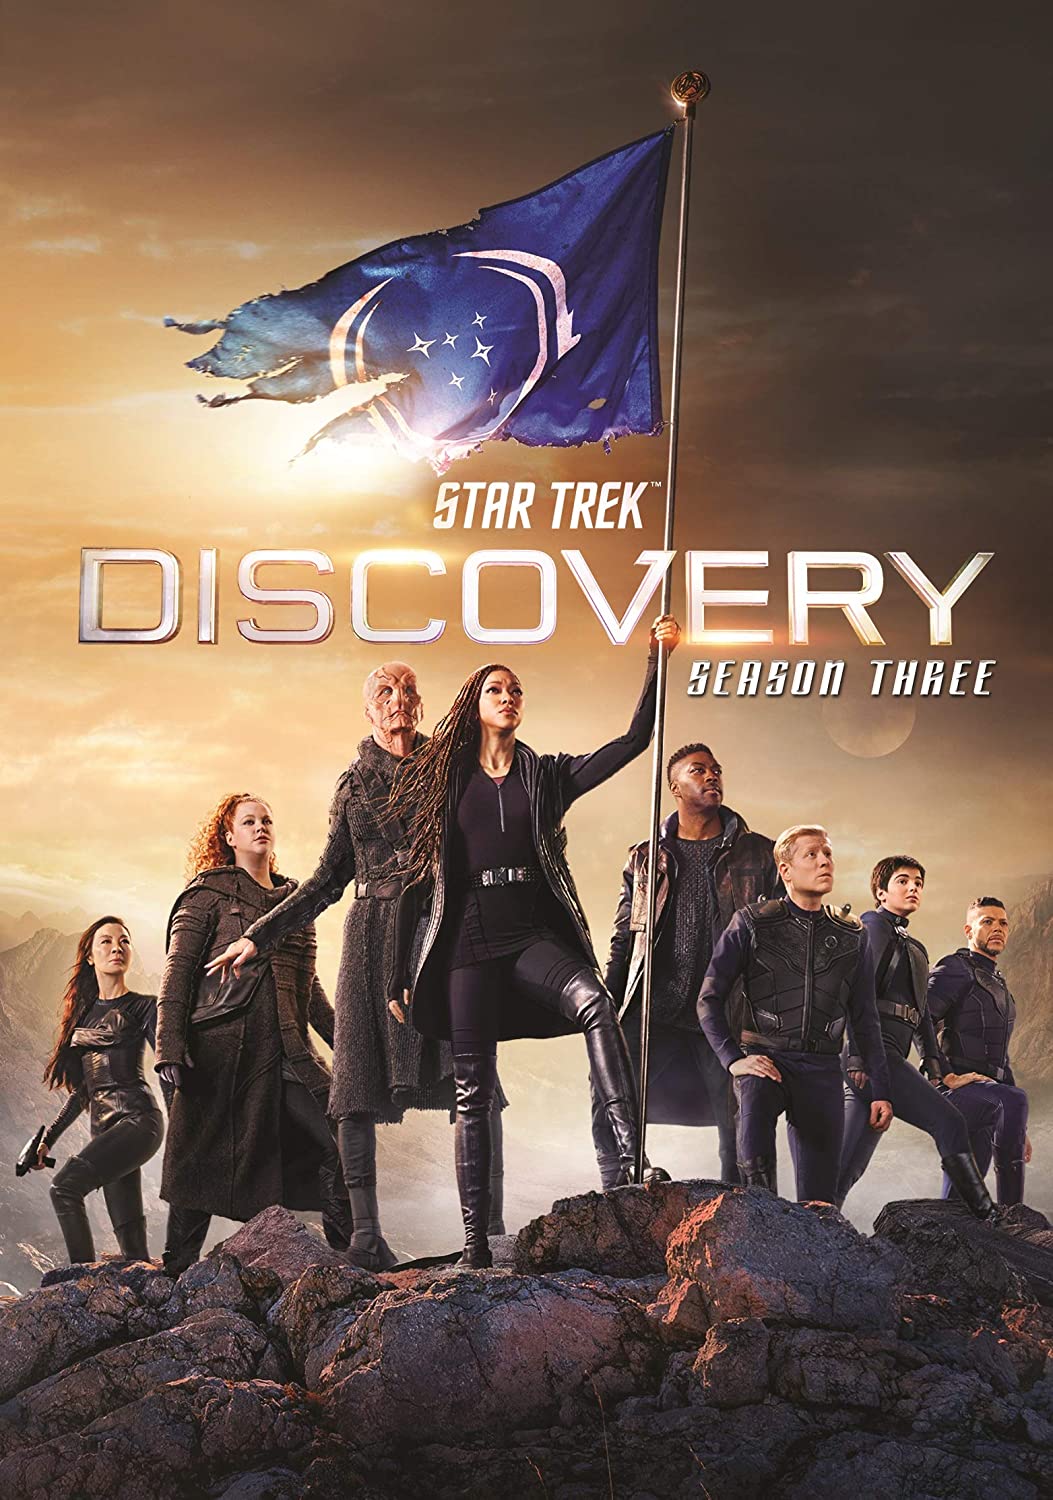 ดูหนังออนไลน์ Star Trek Discovery Season 3 EP12 สตาร์ เทรค ดิสคัฟเวอรี่ ซีซั่นที่ 3 ตอนที่ 12